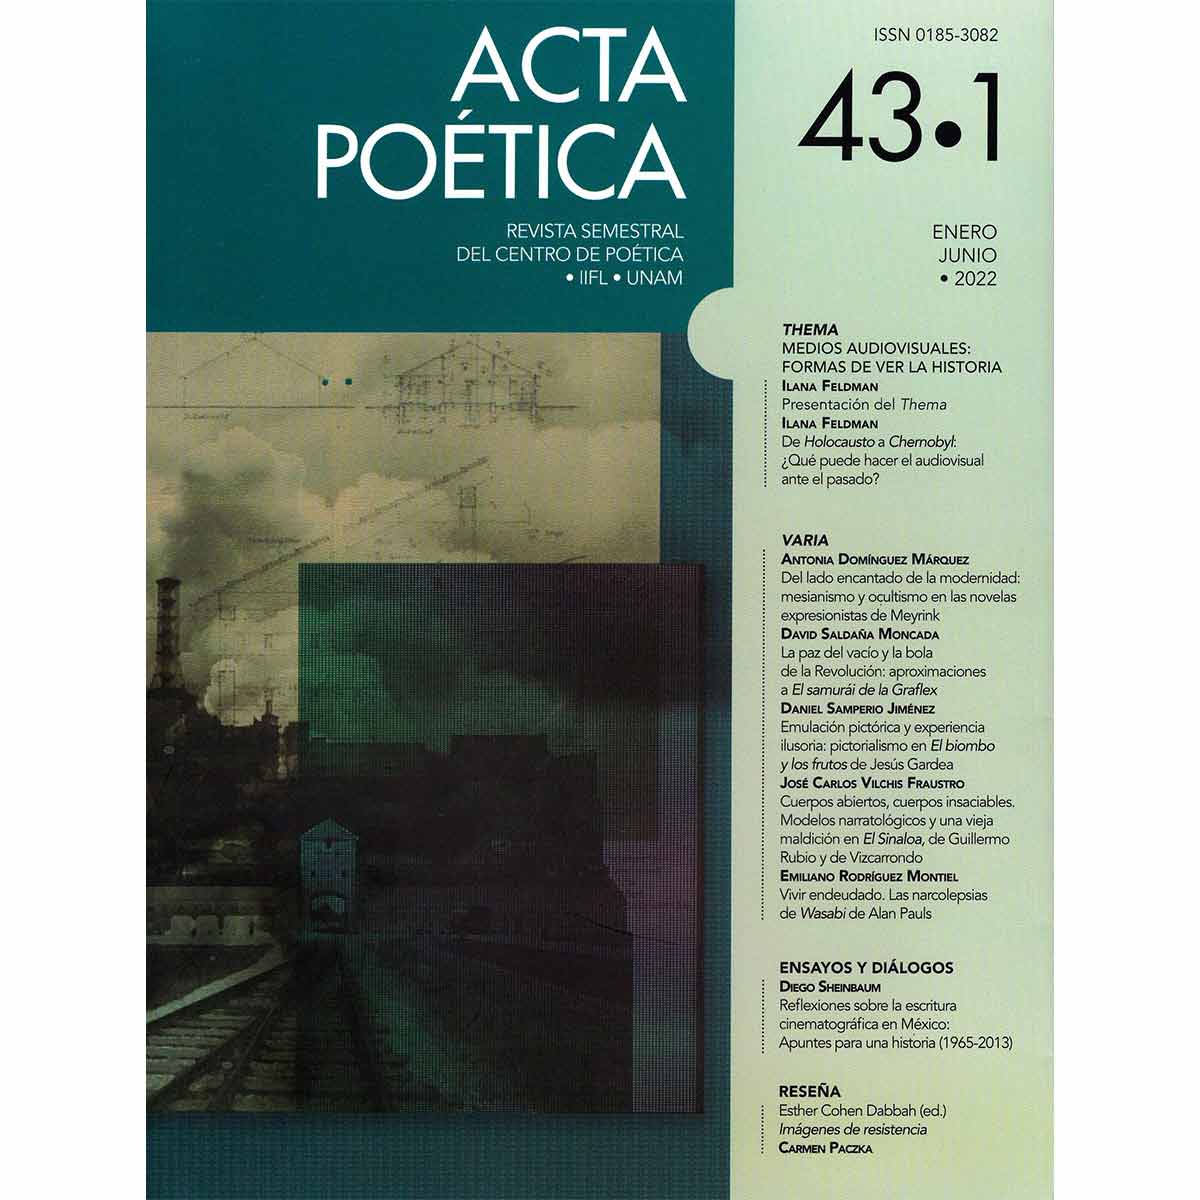 ACTA POÉTICA VOL. 43 No. 1